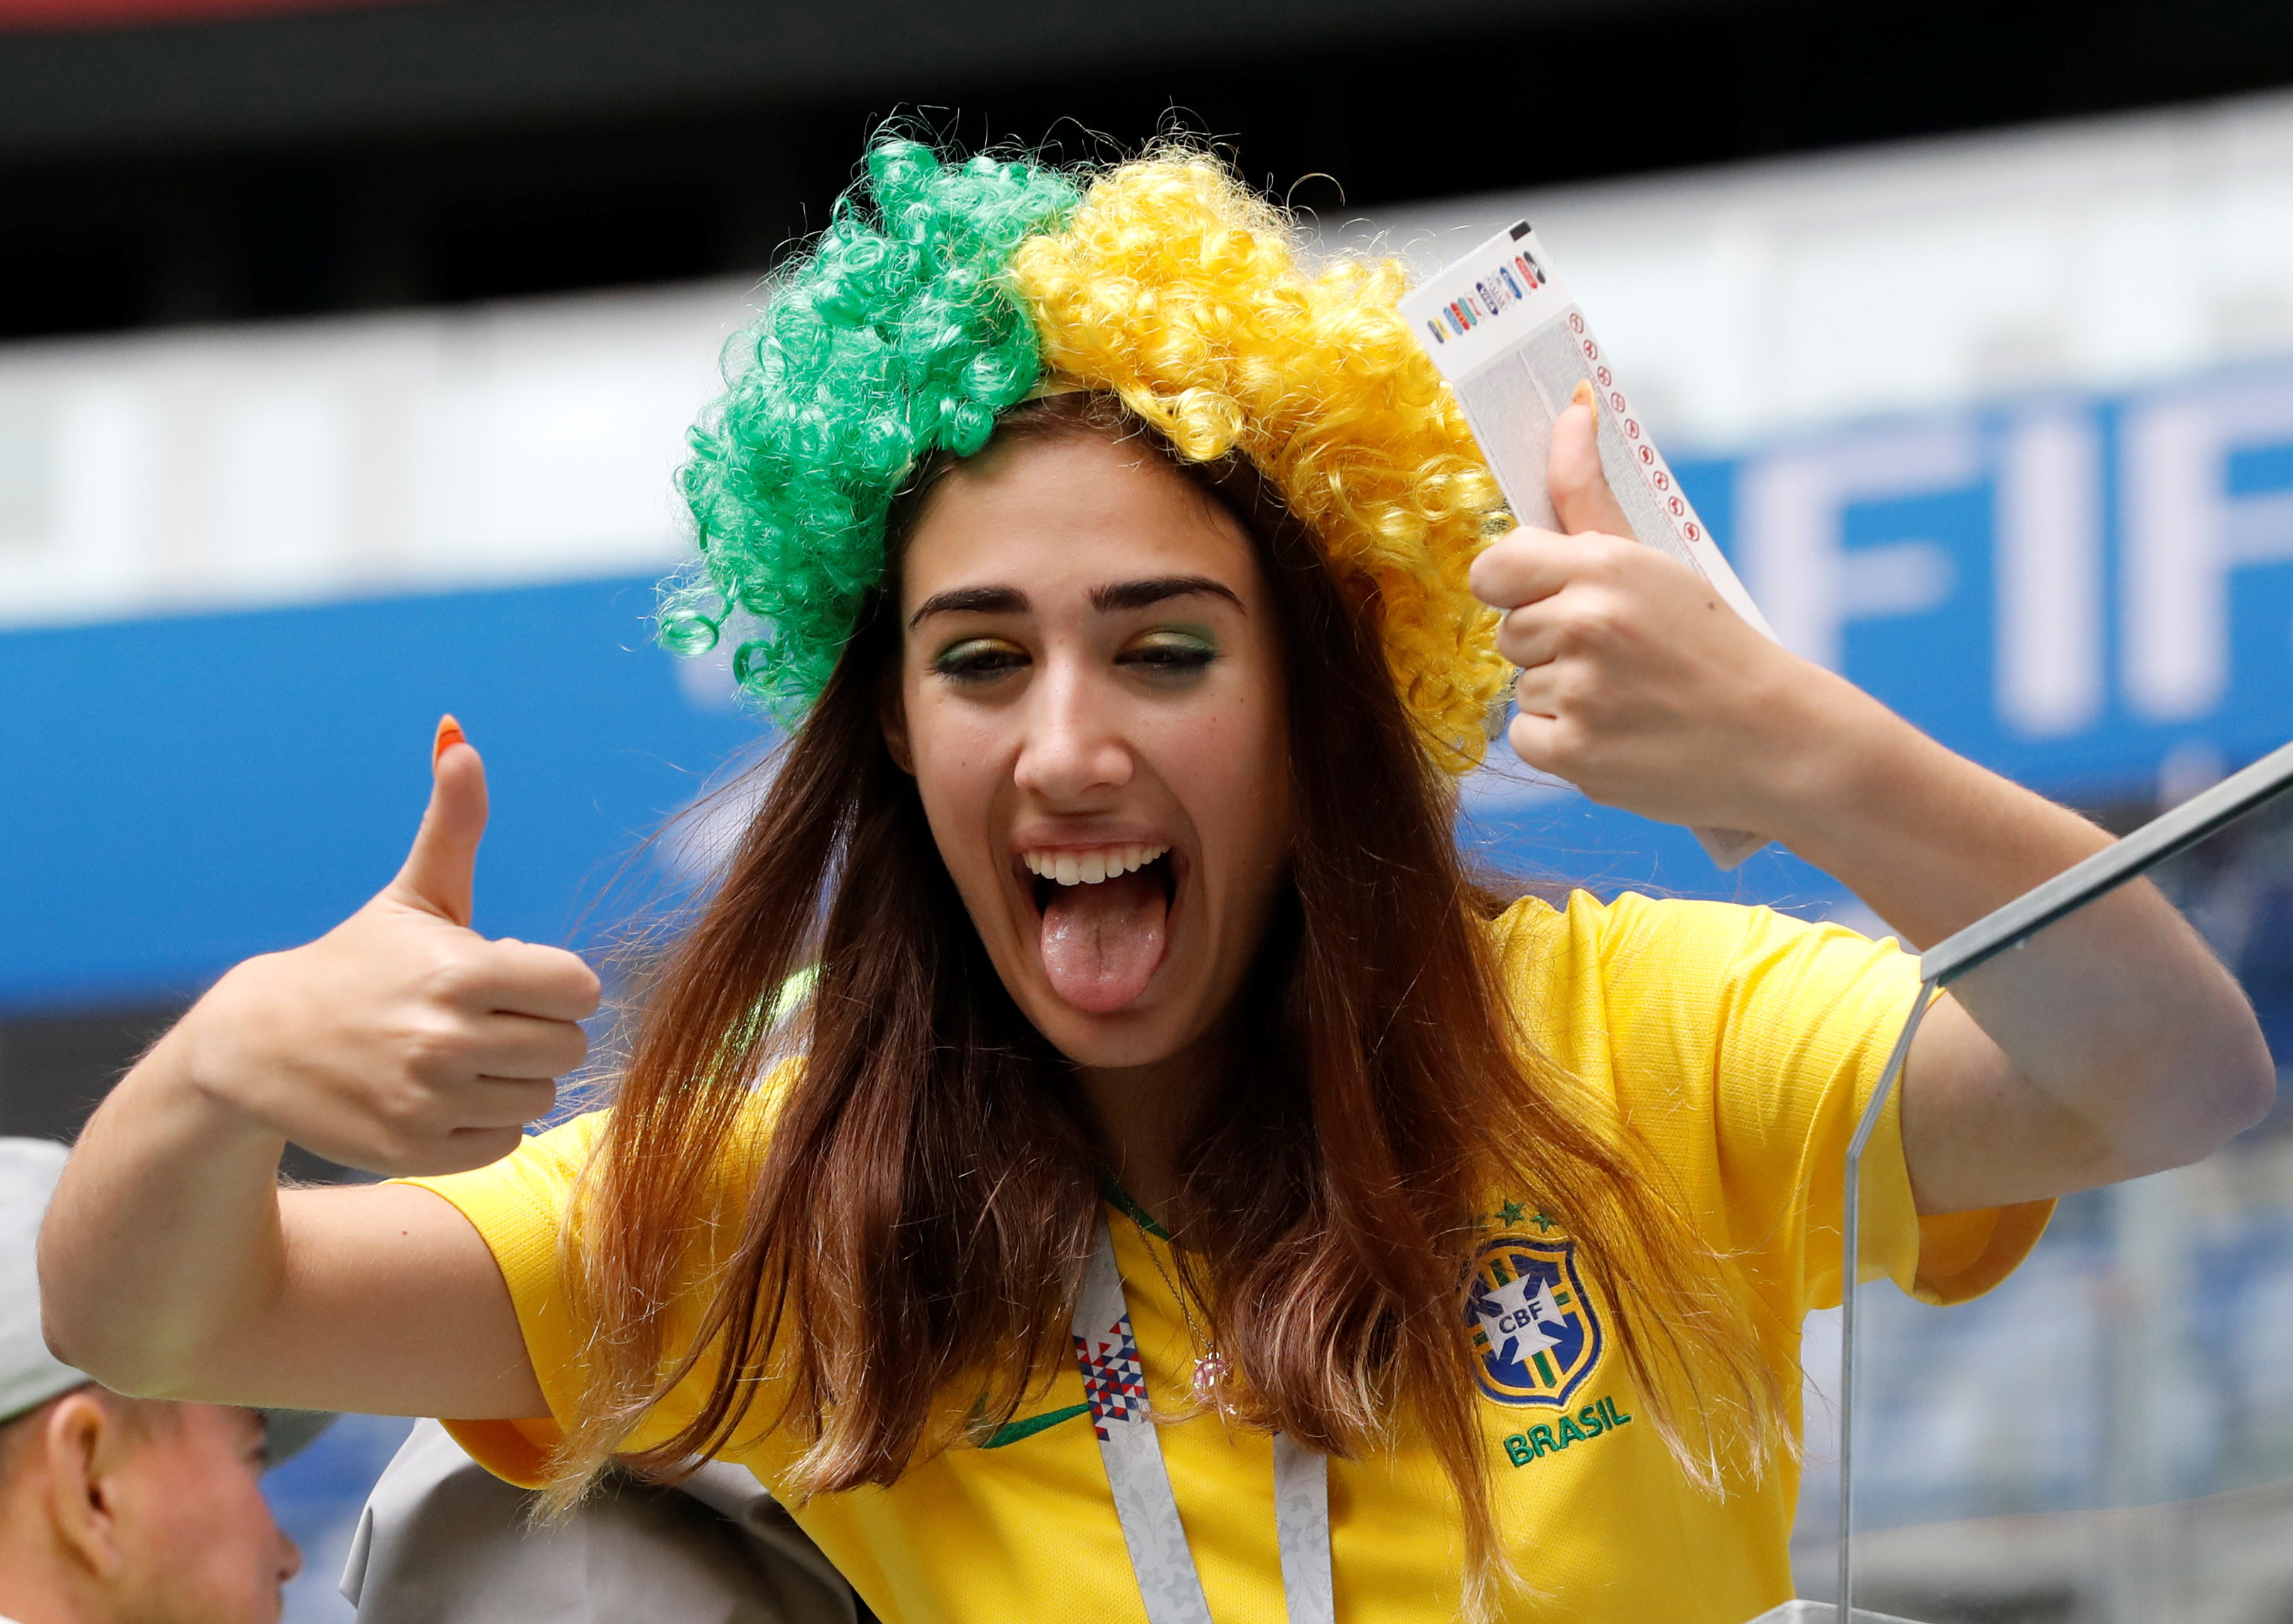 فتاة برازيلية تواجه الكاميرات بابتسامة